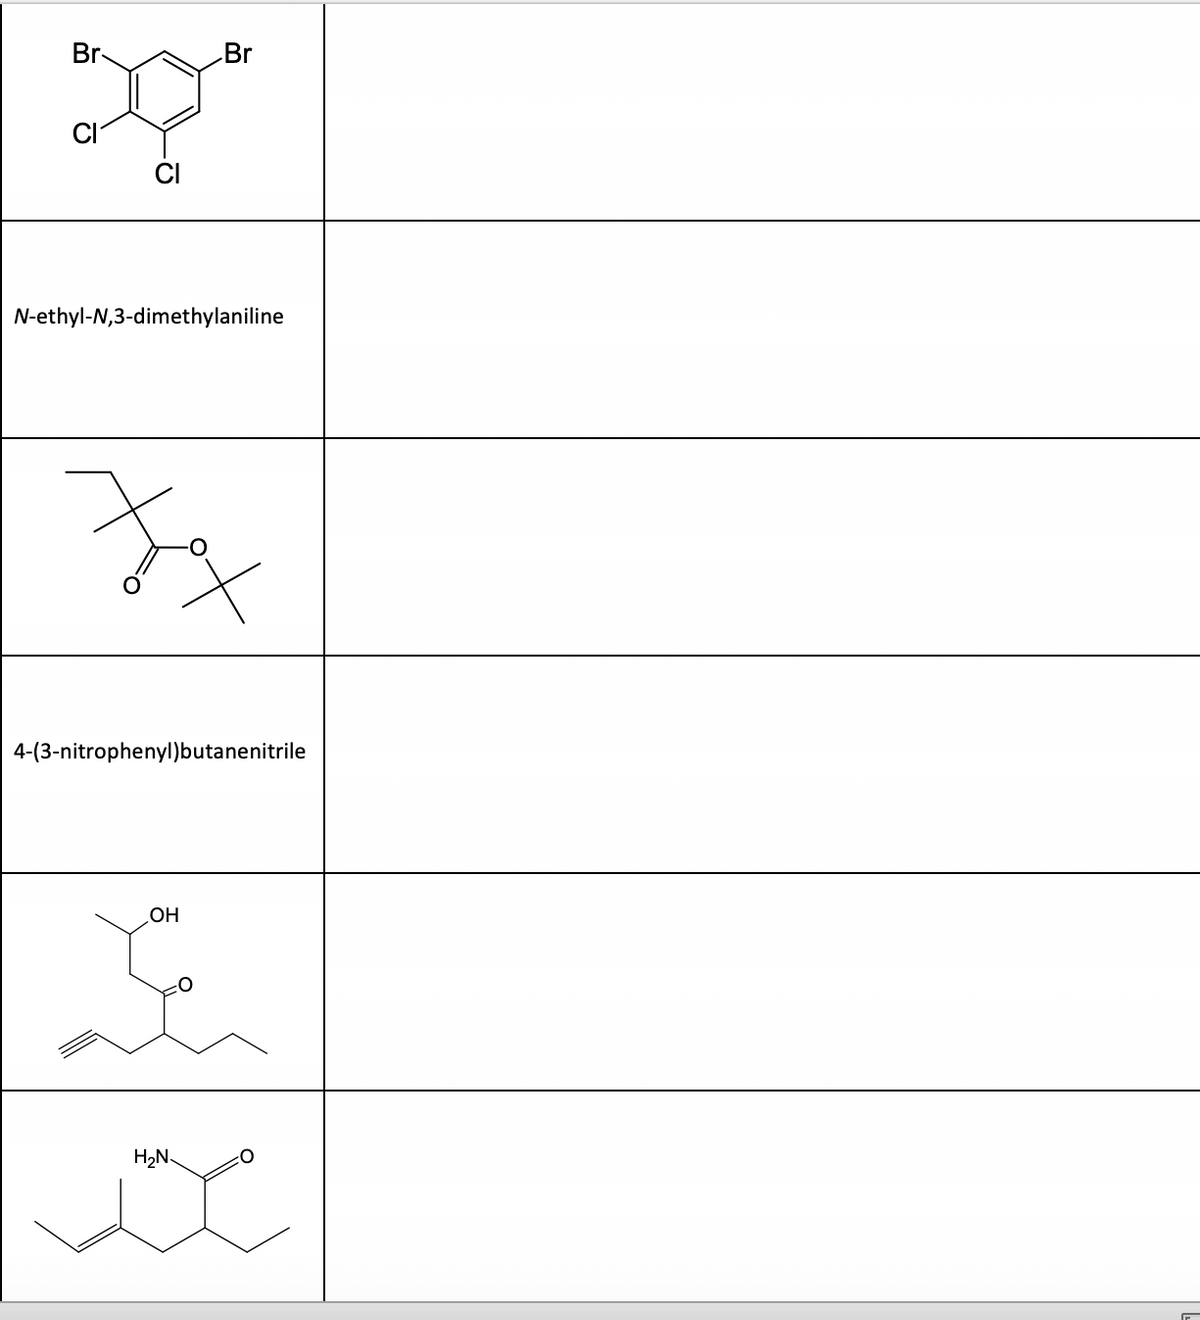 Br
N-ethyl-N,3-dimethylaniline
Br
xملا
4-(3-nitrophenyl)butanenitrile
OH
*
H2N.
محمد